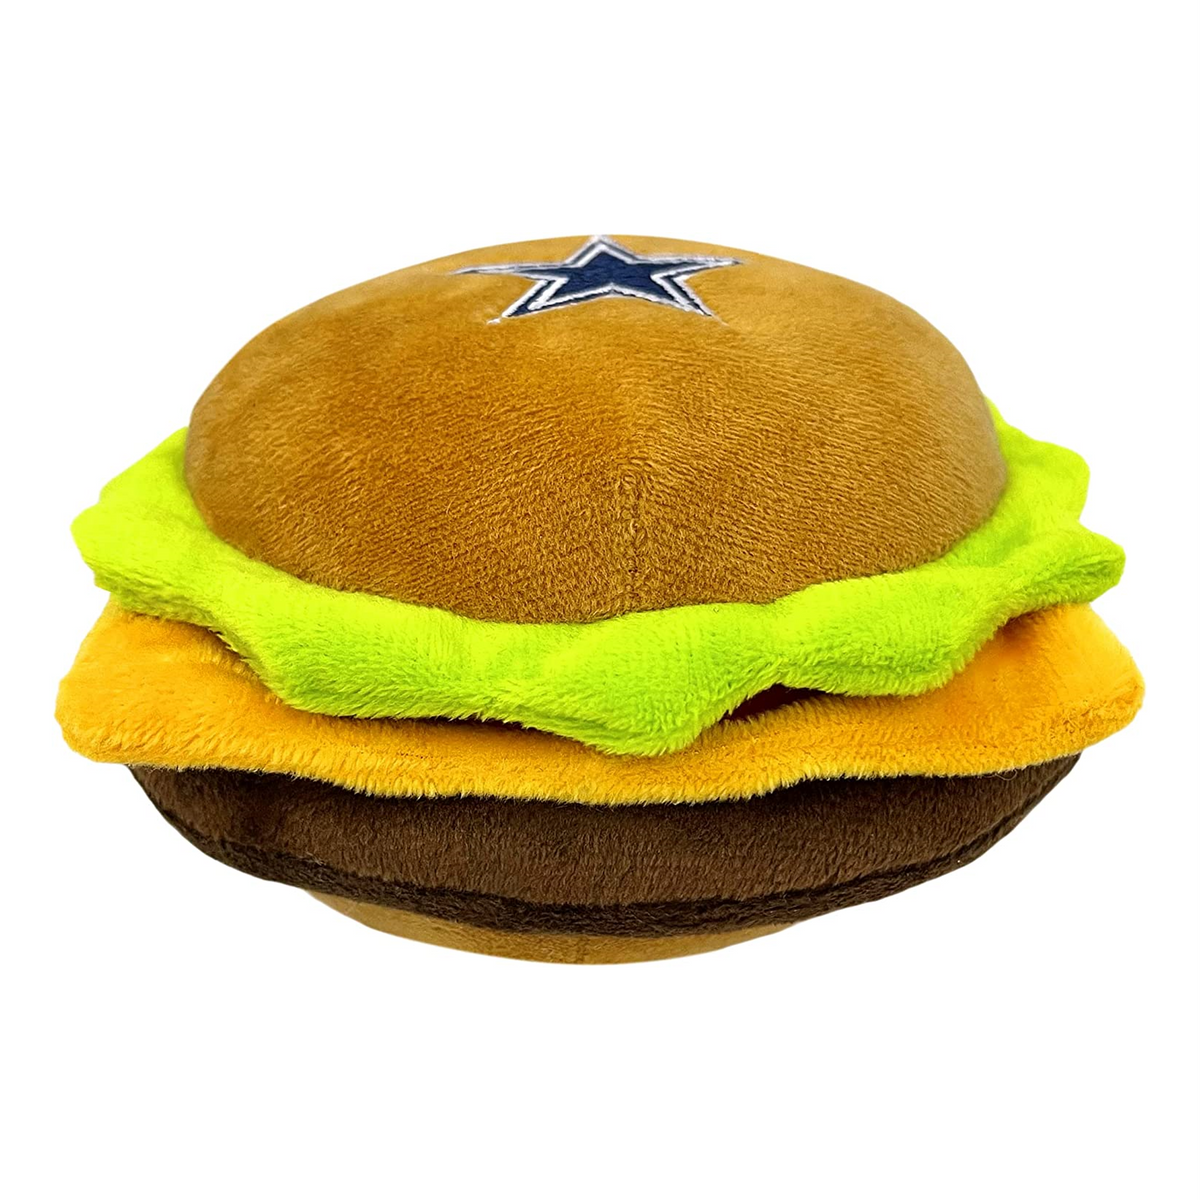 Dallas Cowboys Hamburger Plush Toys - 3 Red Rovers